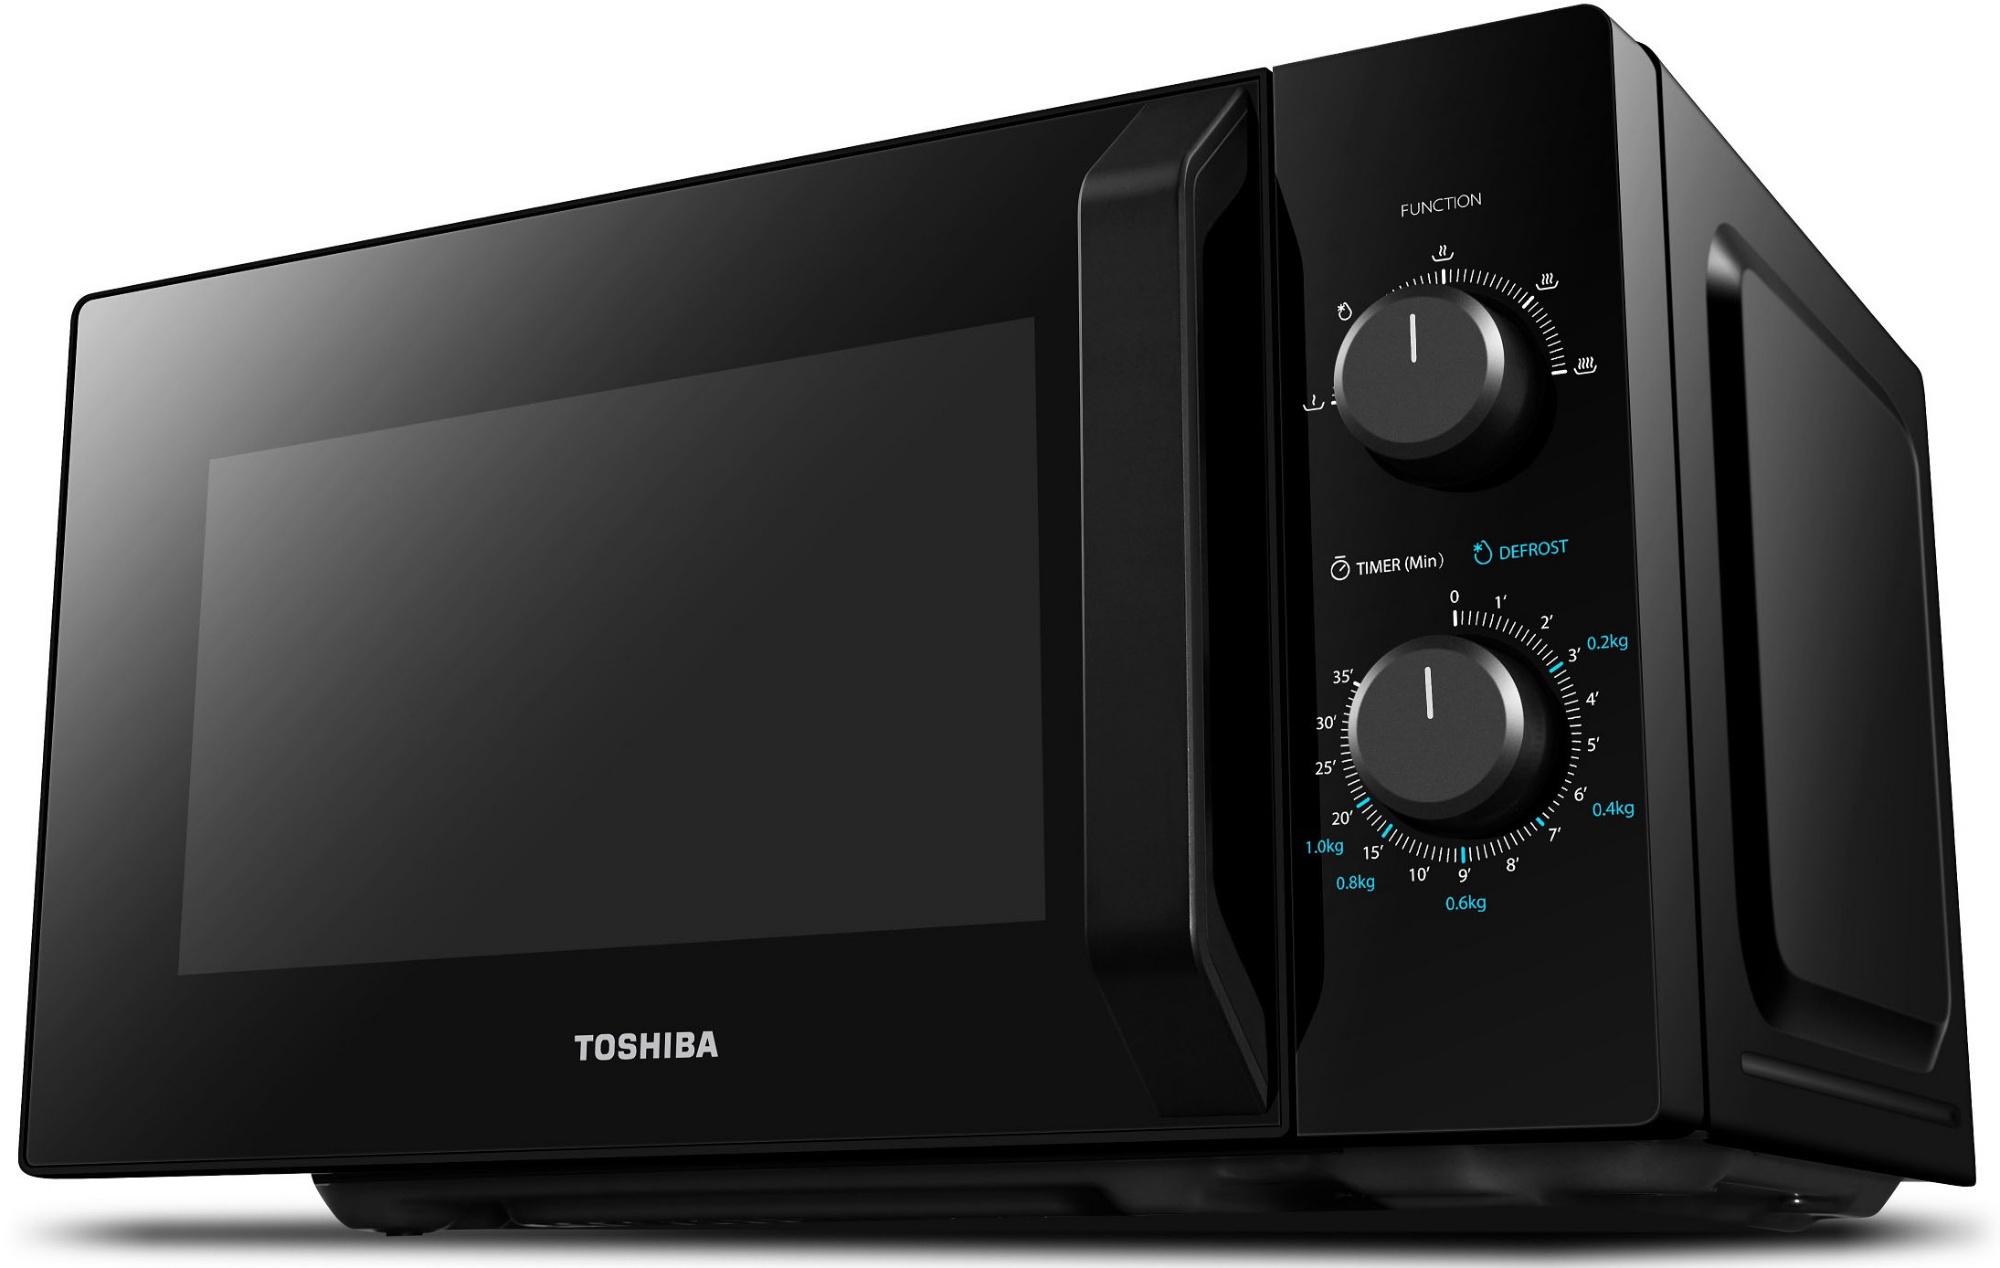  печь Toshiba MW-MM20P BK,  по выгодной цене с .